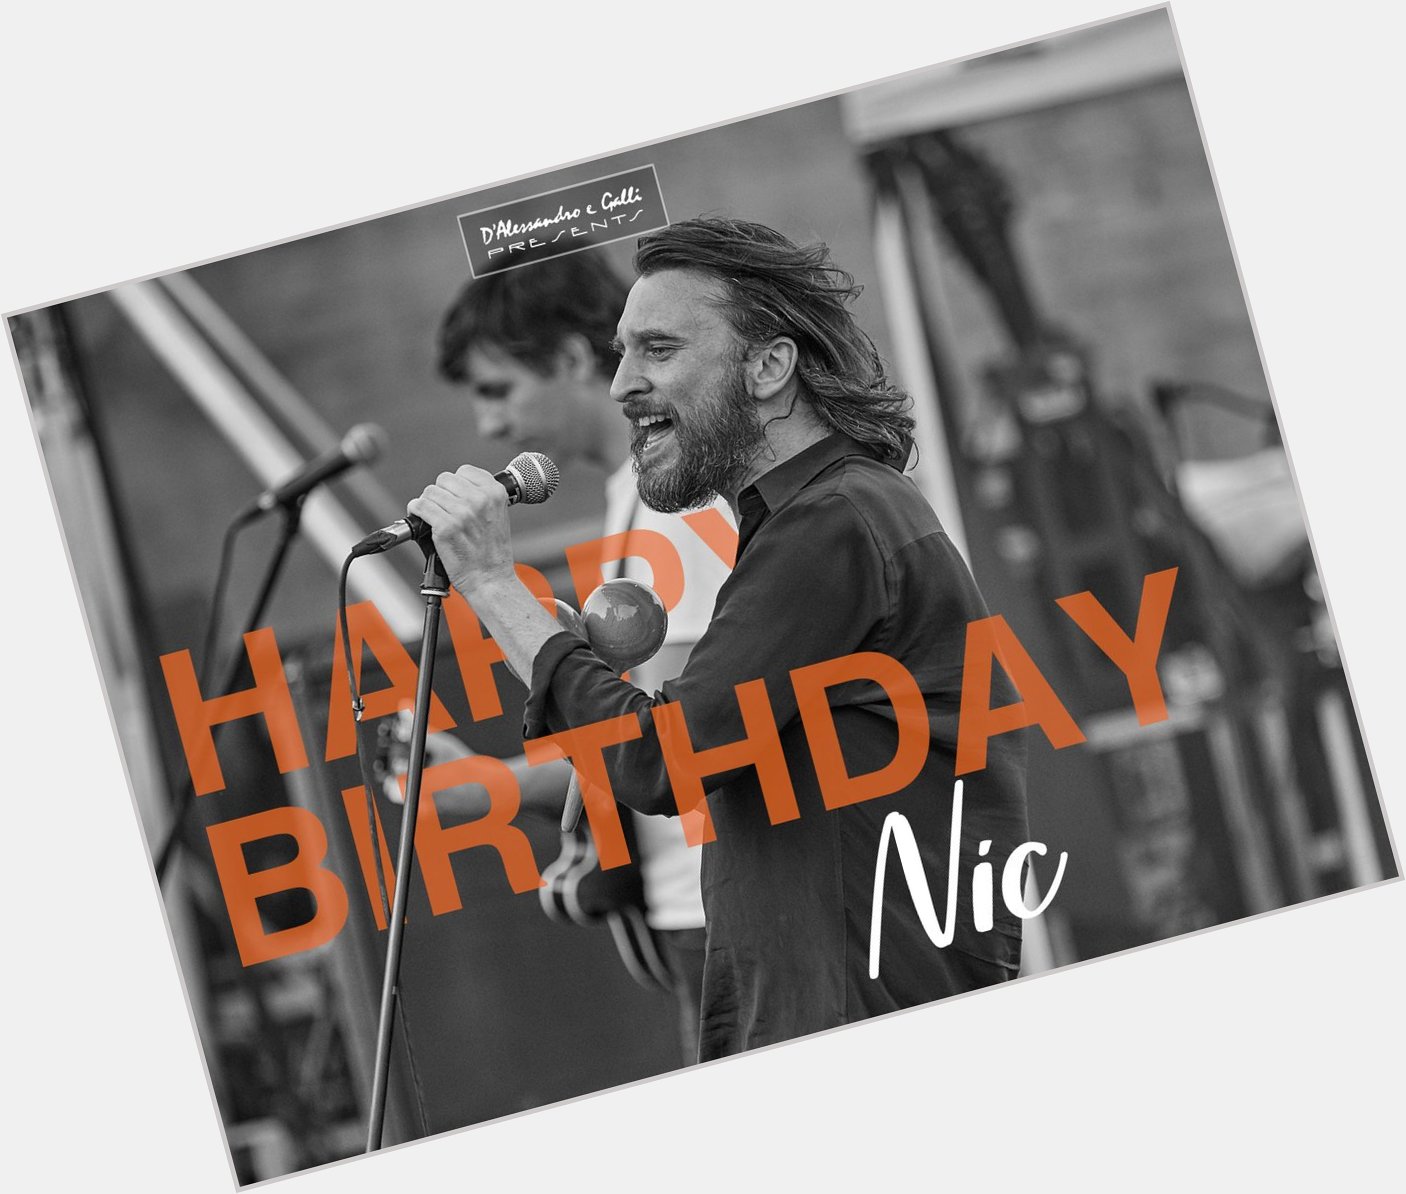 Happy birthday, Nic Cester! 